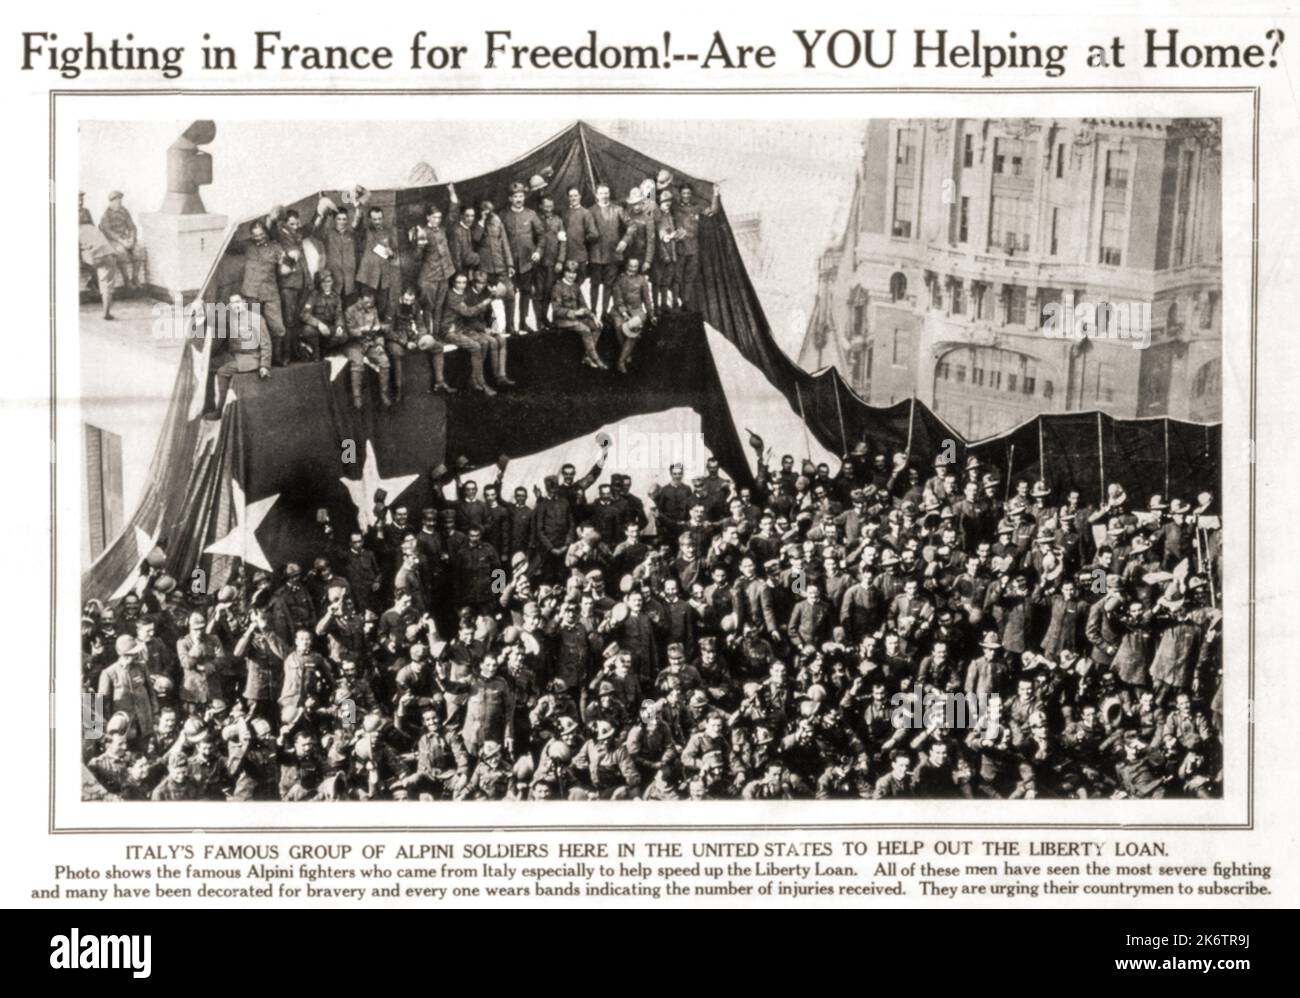 1918 , Nueva York , EE.UU. : EL ALPINI militar italiano agrupa a soldados  aquí en Estados Unidos para ayudar al PRÉSTAMO DE LA LIBERTAD . Foto  publicada en la revista americana '